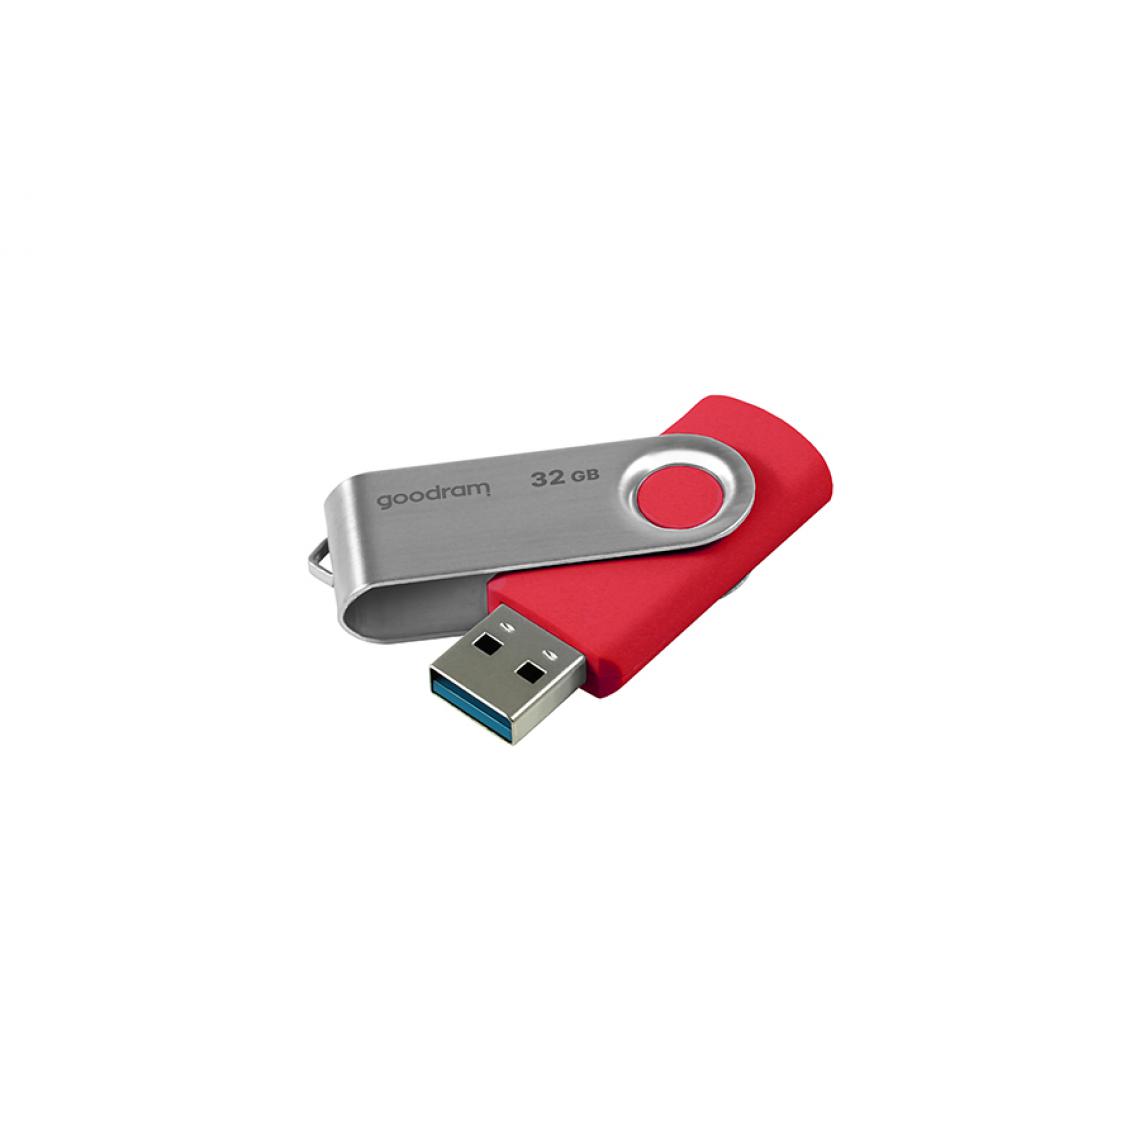 Panasonic - Rasage Electrique - Bulk 100 clés 32GO Goodram 2.0 rouge - Tablette Windows